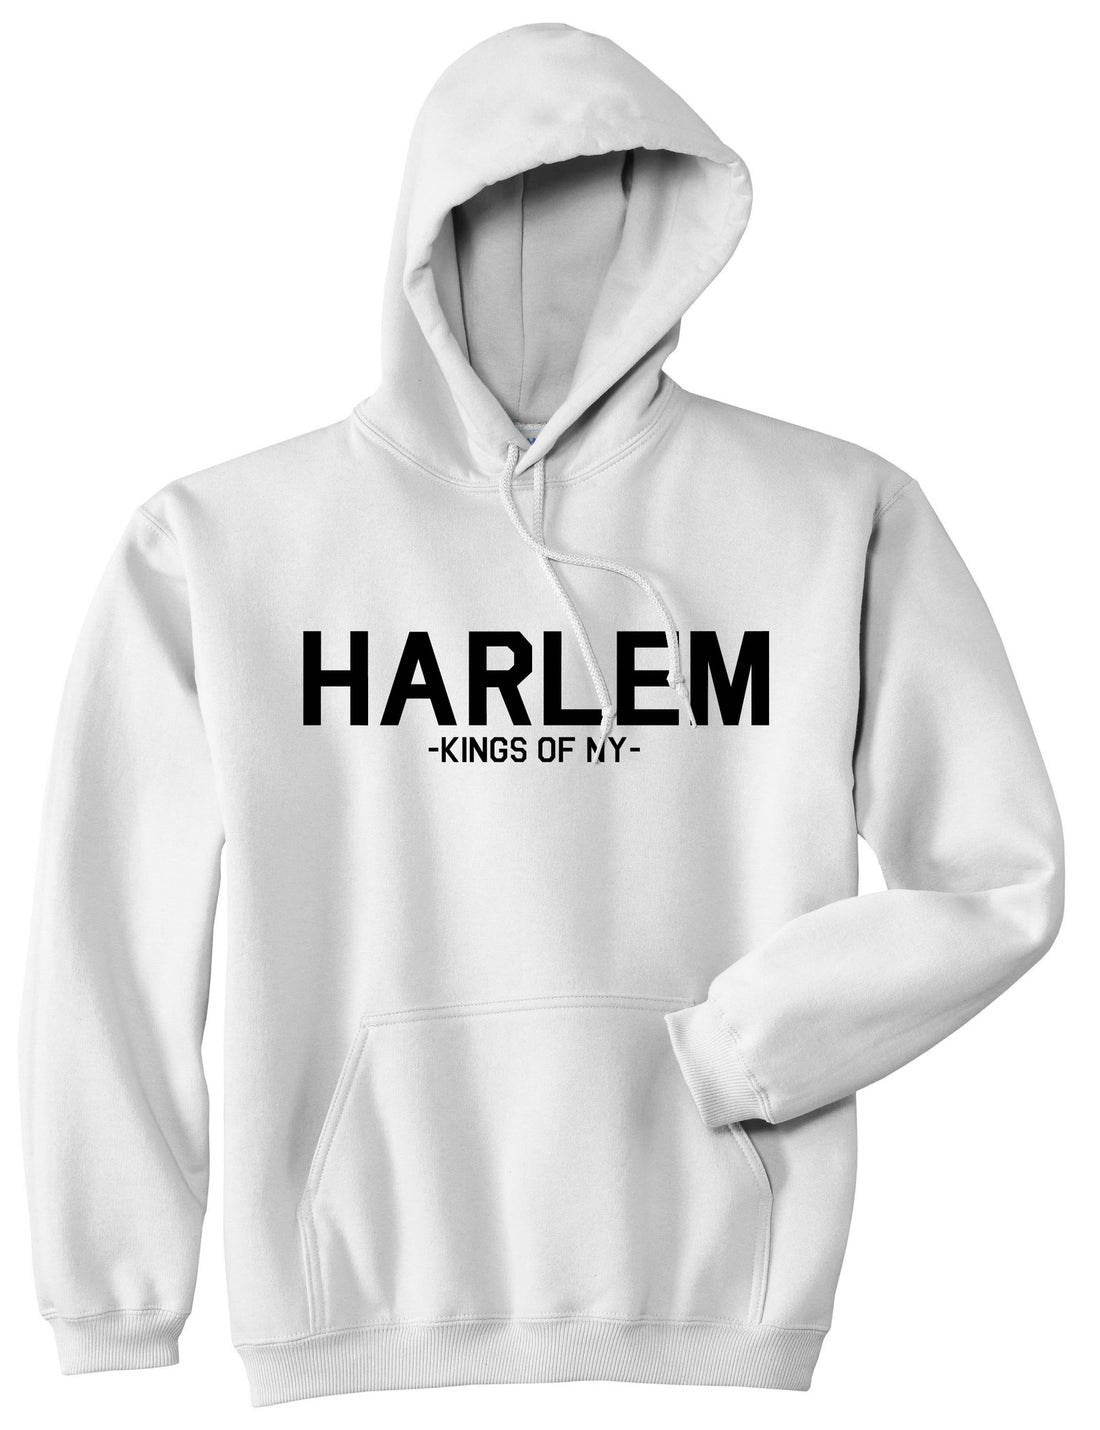 Harlem New York NYC Pullover Hoodie Hoody in White